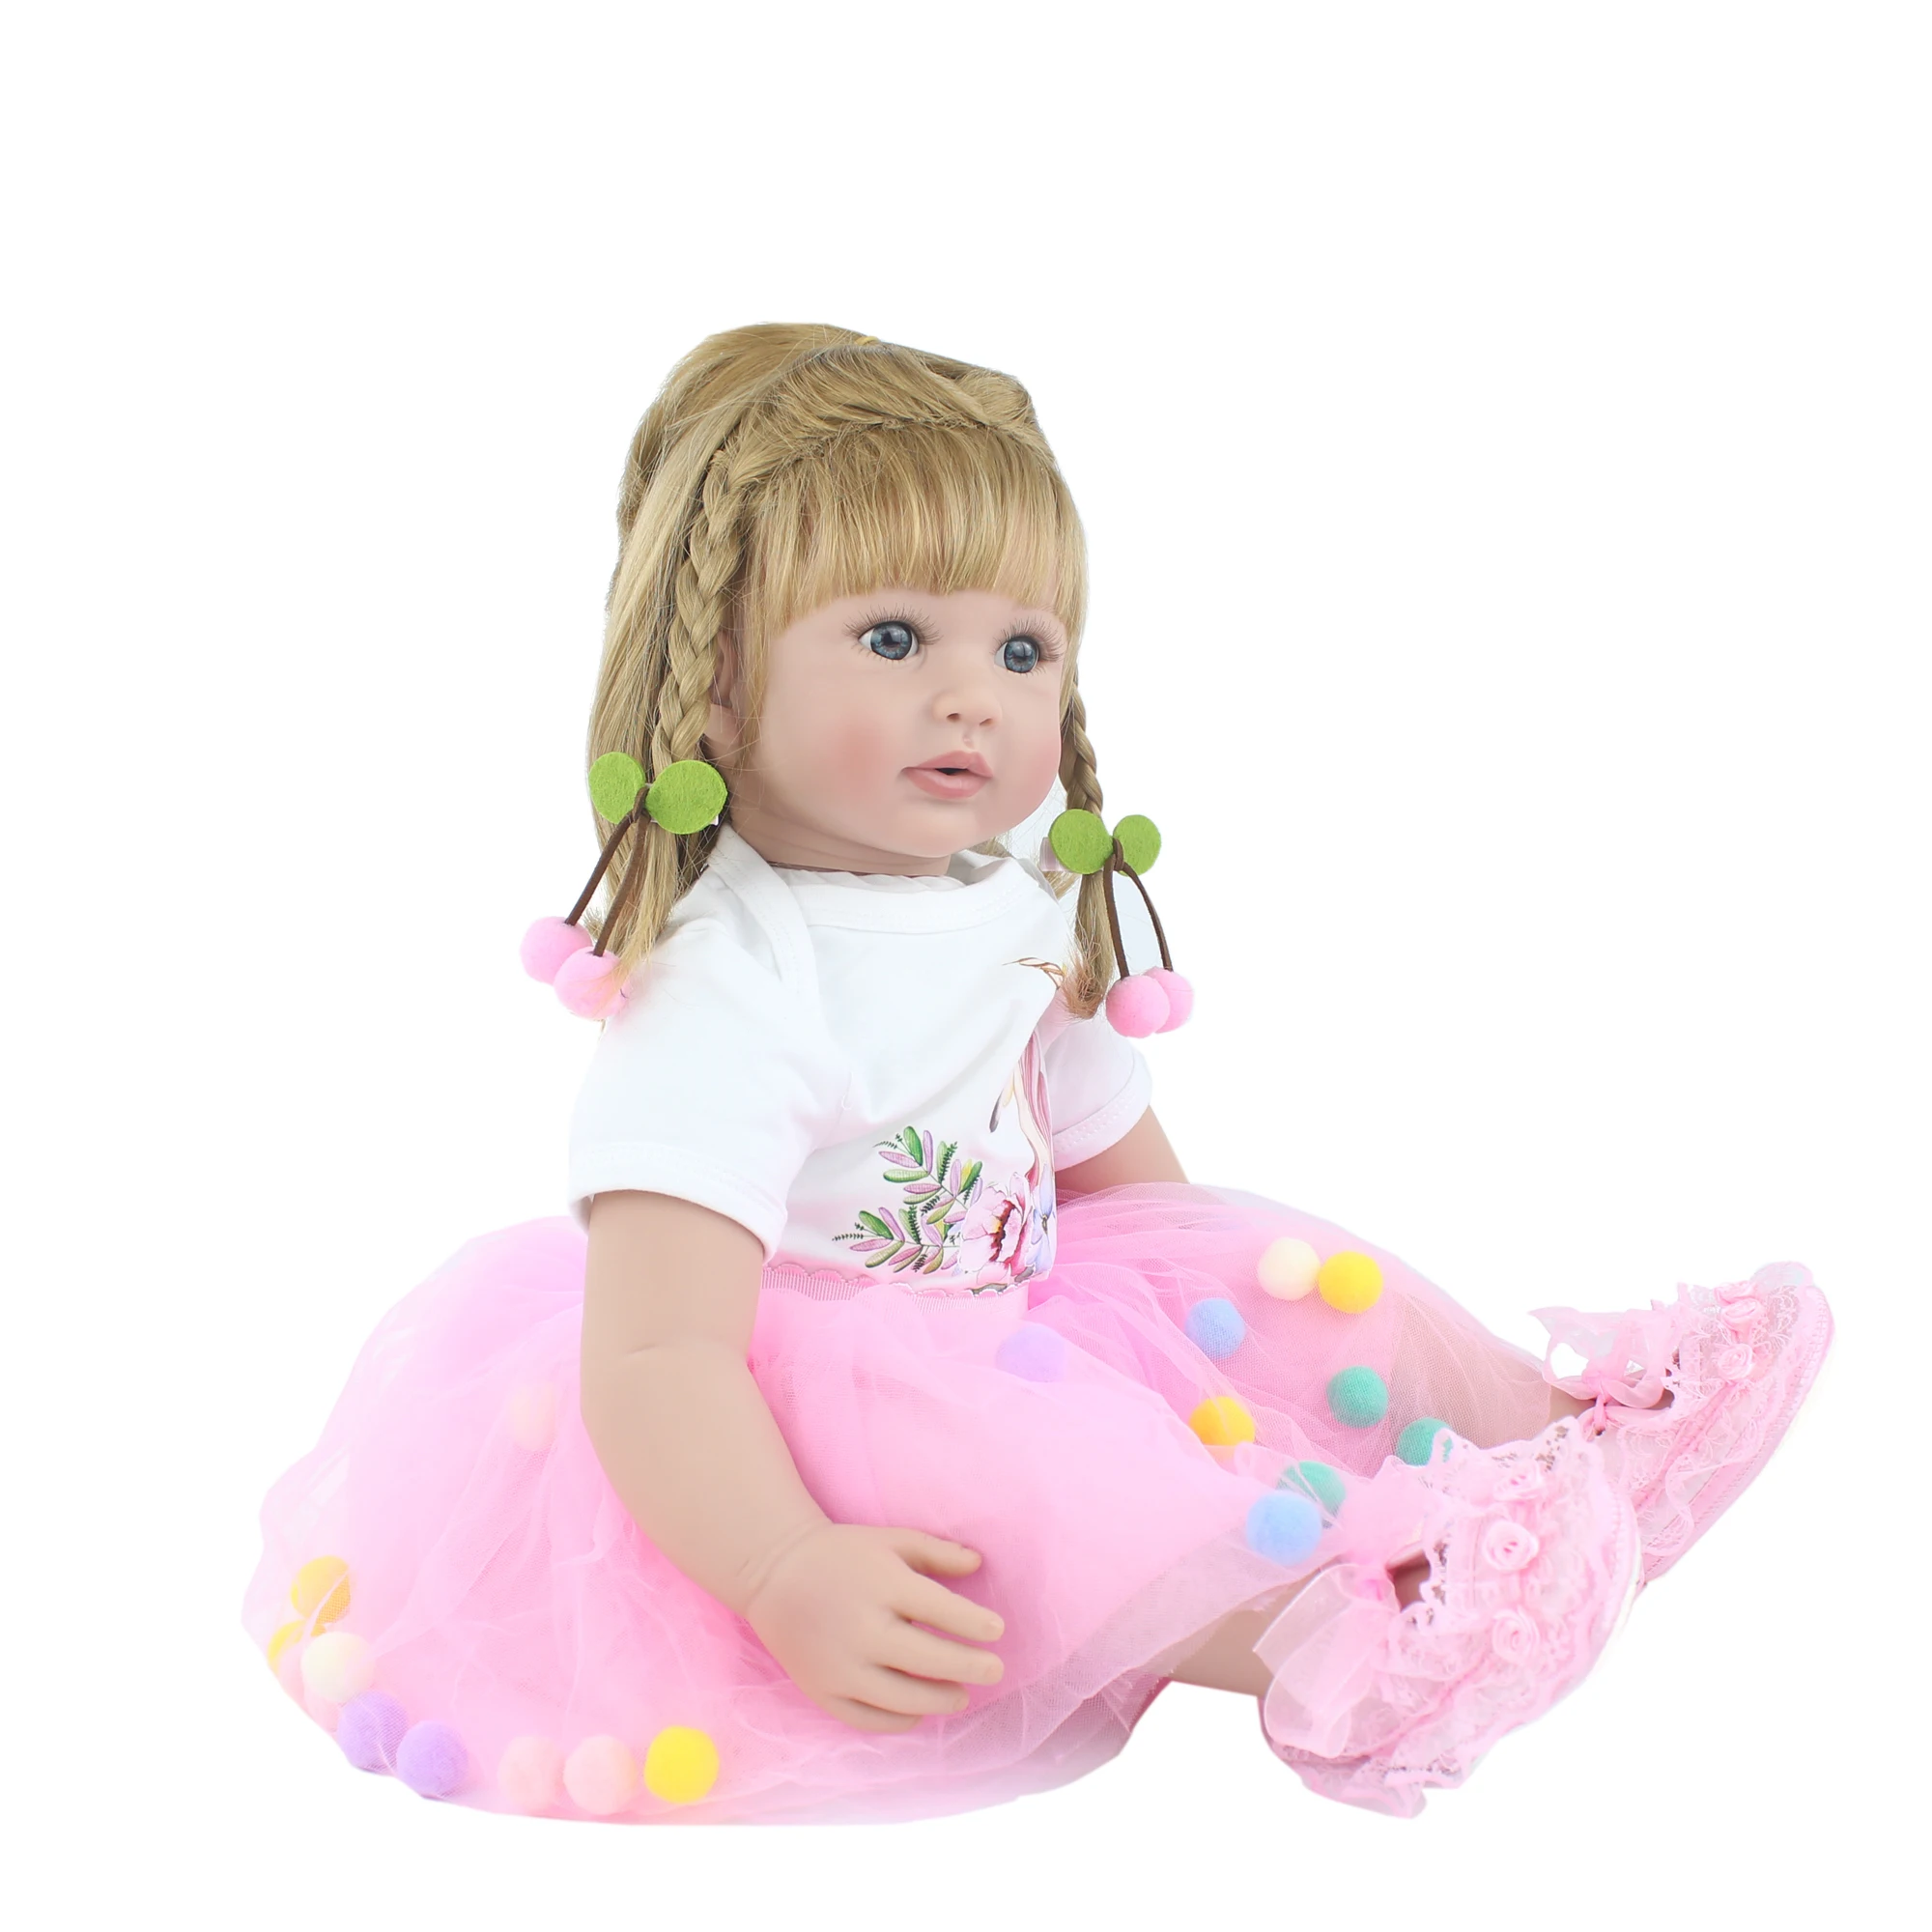 60 см Силиконовые реборн Младенцы Куклы Игрушки для девочек розовое платье блонд принцесса малыш Bebe платье кукла ребенок подарок на день рождения для ребенка